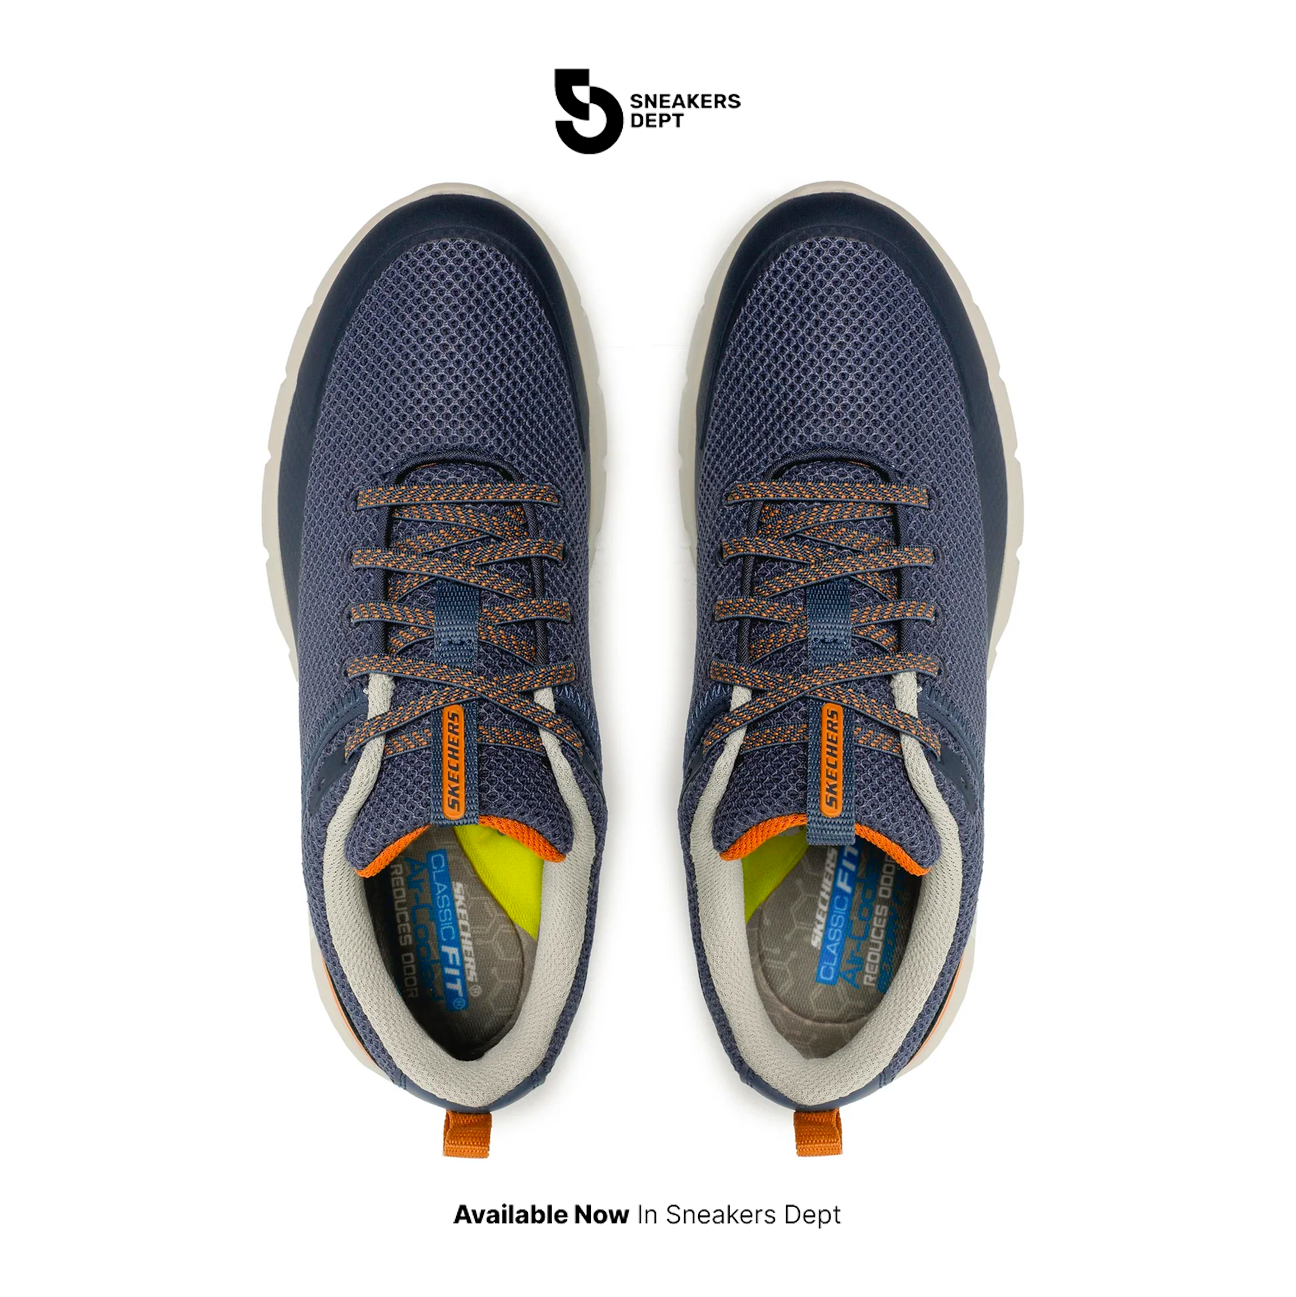 Sepatu Sneakers Pria SKECHERS DEL RETTO ARLING 210573NVY ORIGINAL